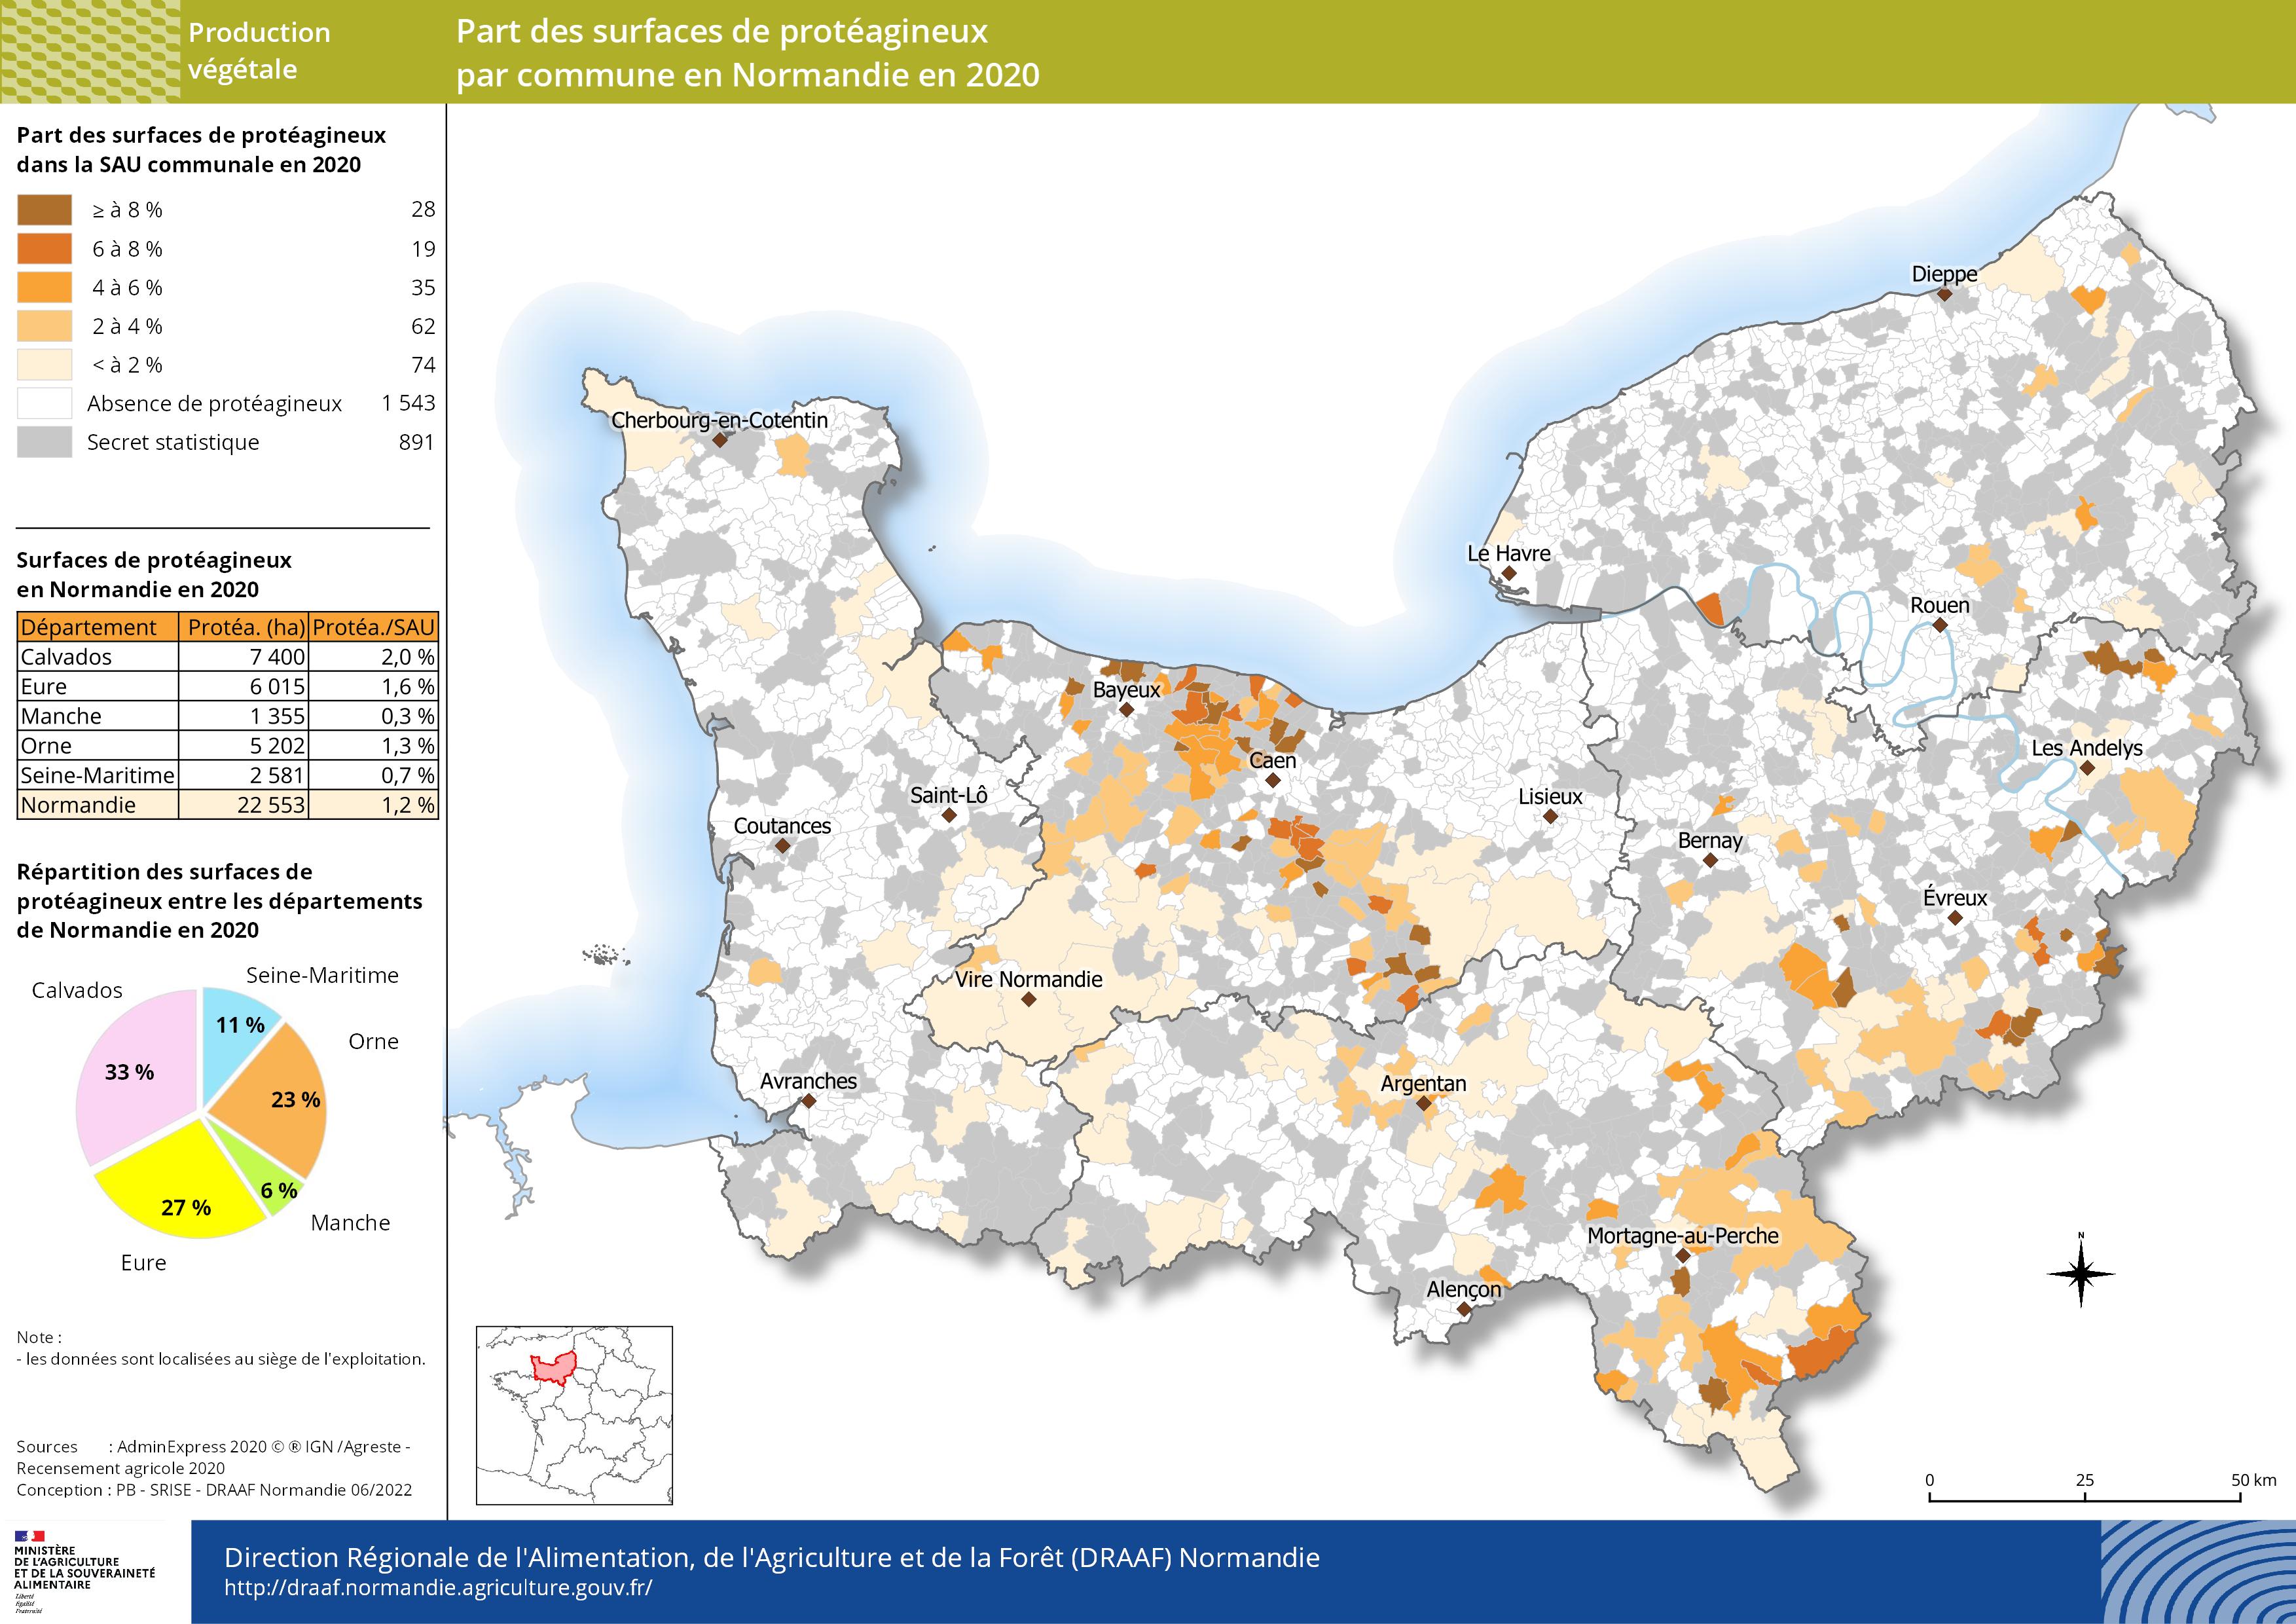 Carte représentant la part des surfaces des protéagineux par commune en Normandie en 2020